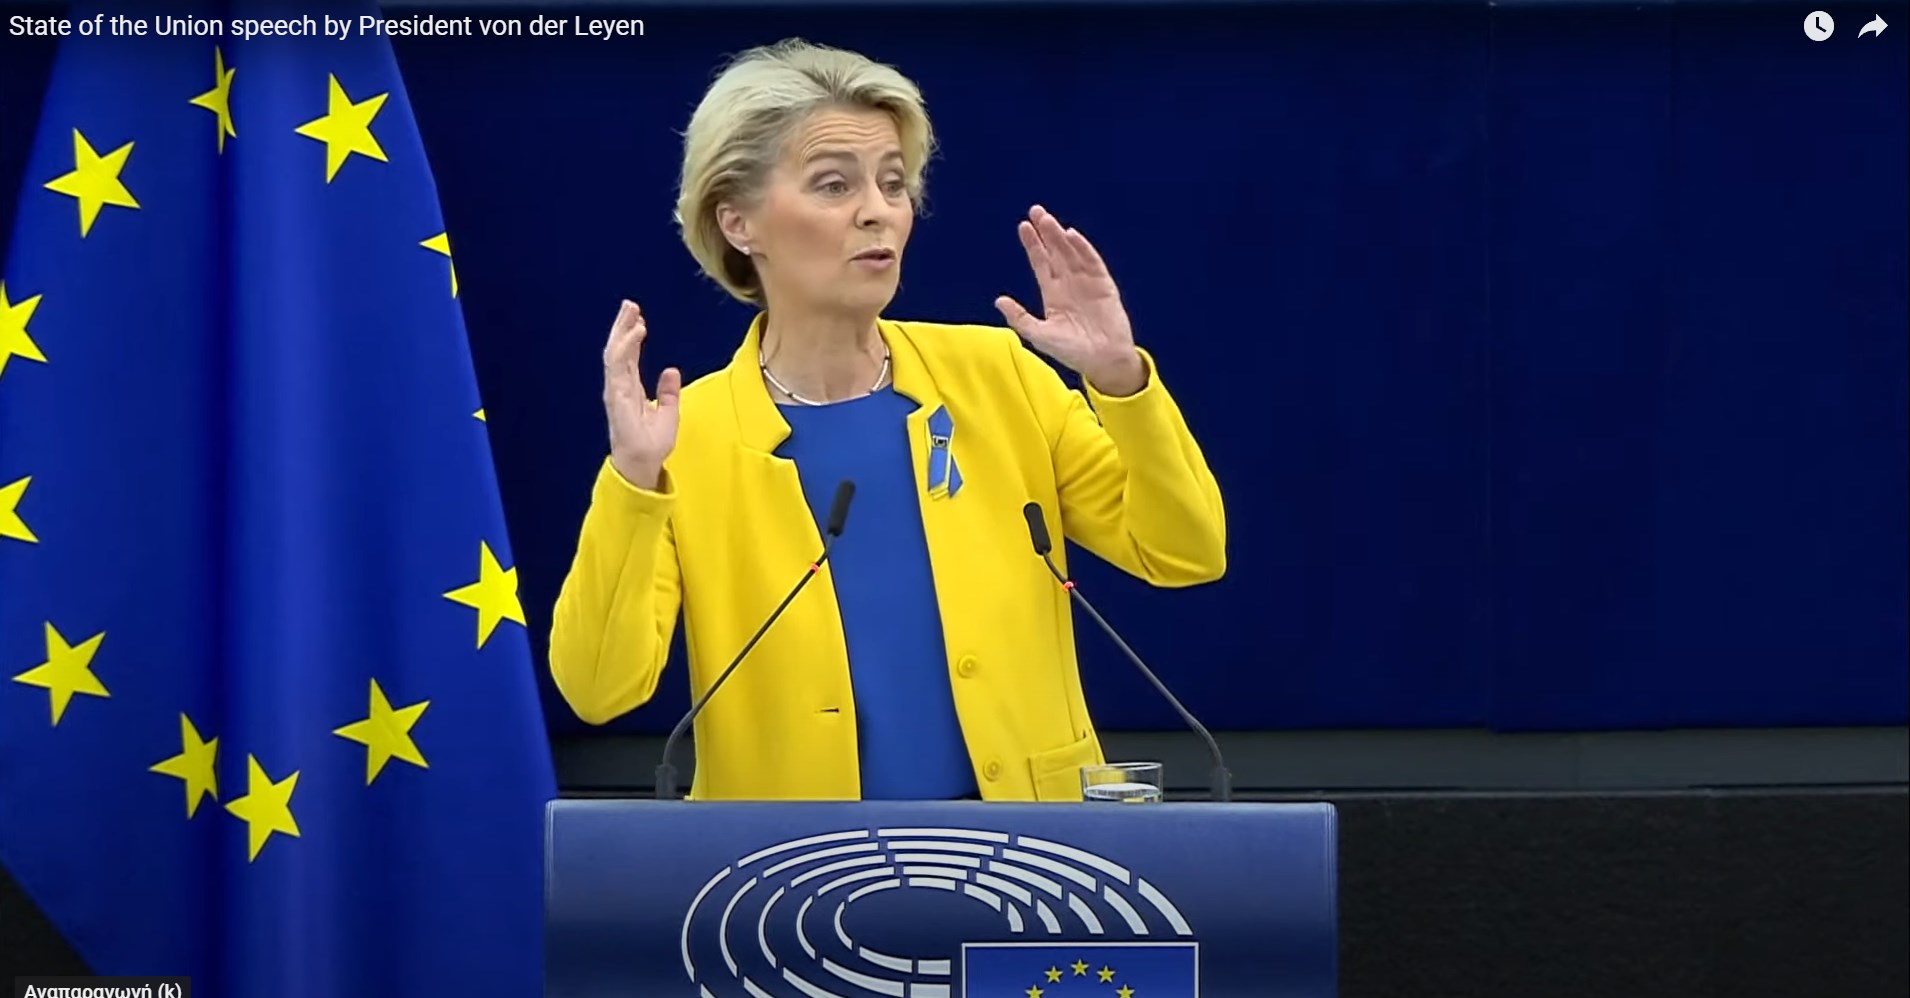 ΕΕ: Ευρωβουλευτές έφτιαξαν ιστοσελίδα καταγγελιών για λομπίστες και ύποπτες δοσοληψίες